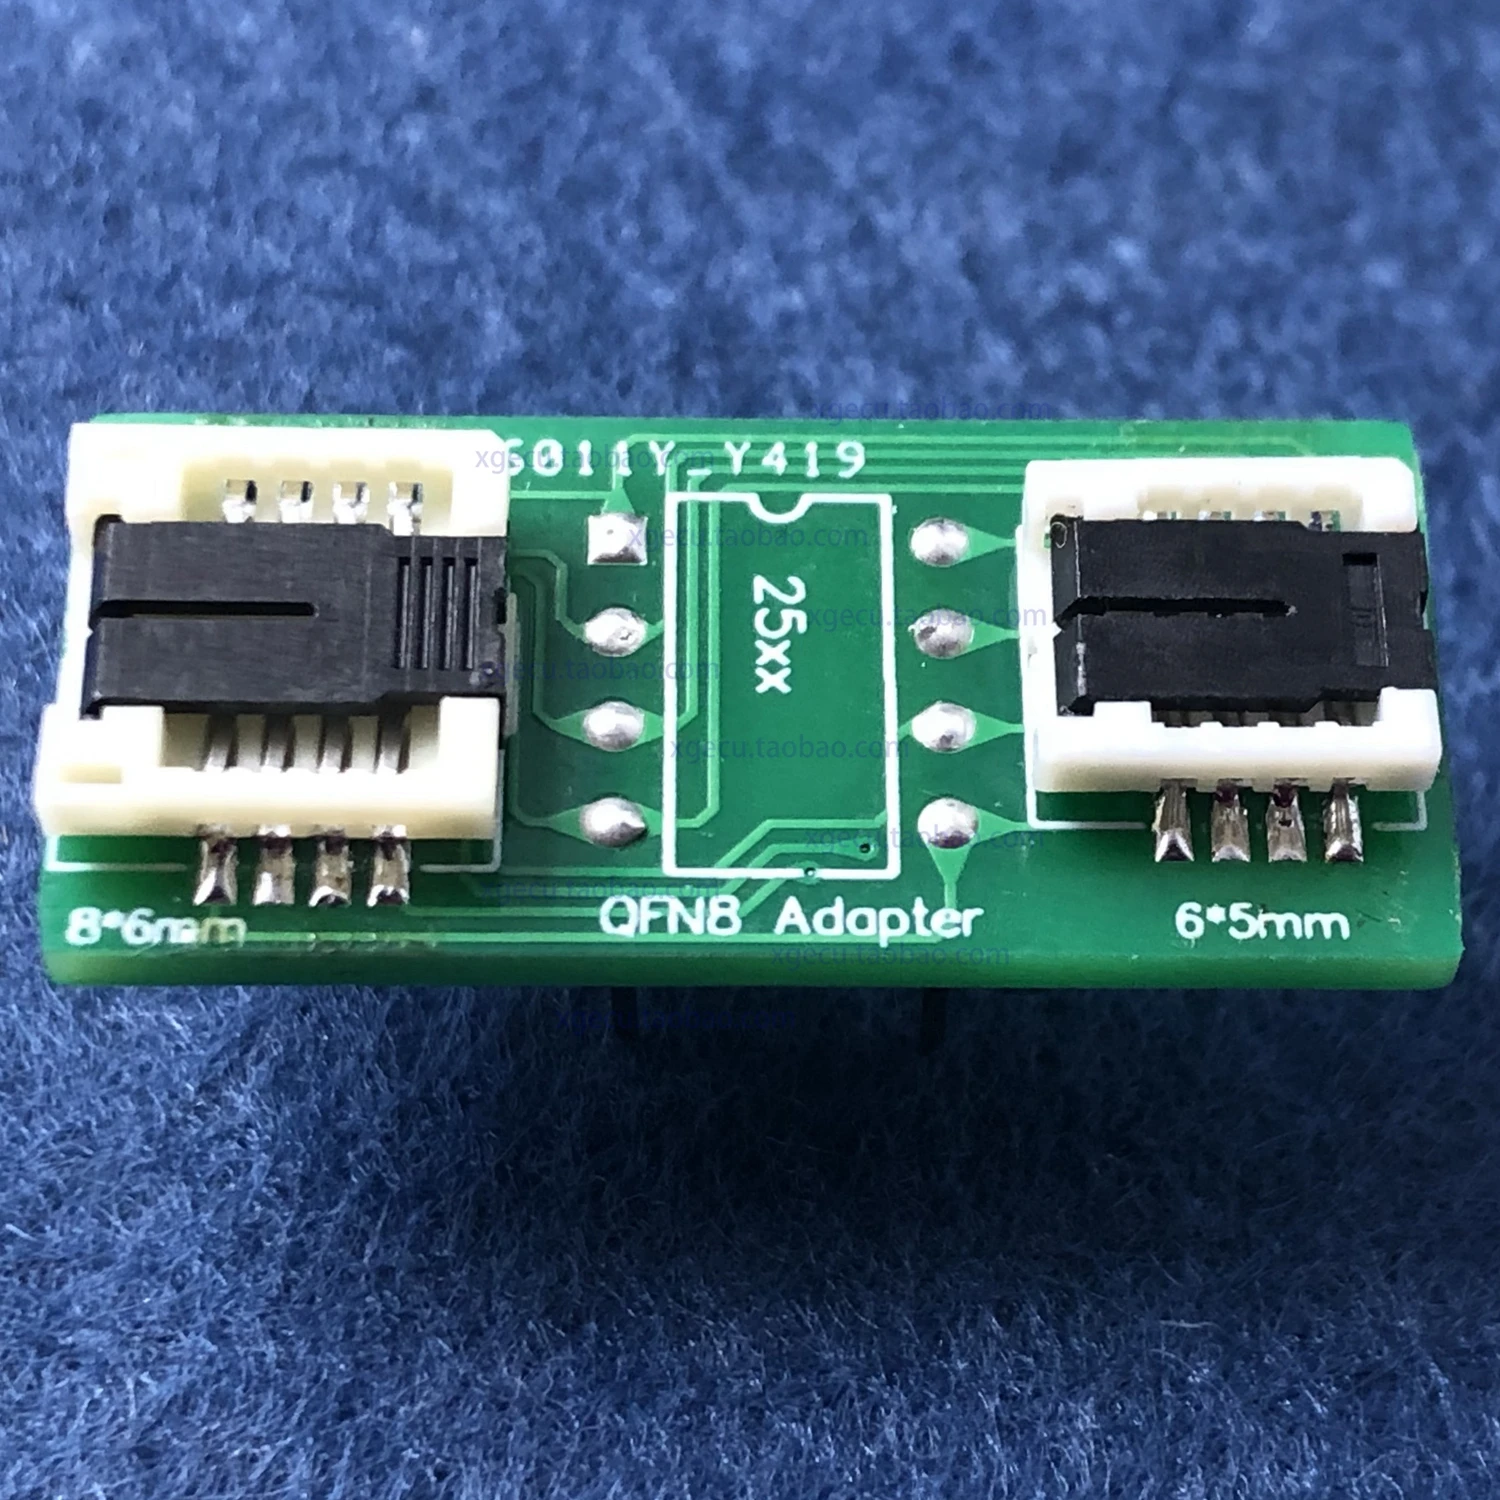 

Адаптер 2 в 1 QFN8 WSON8 MLF8- DIP8, розетка для выжигания 6*5 и 8*6 чипов